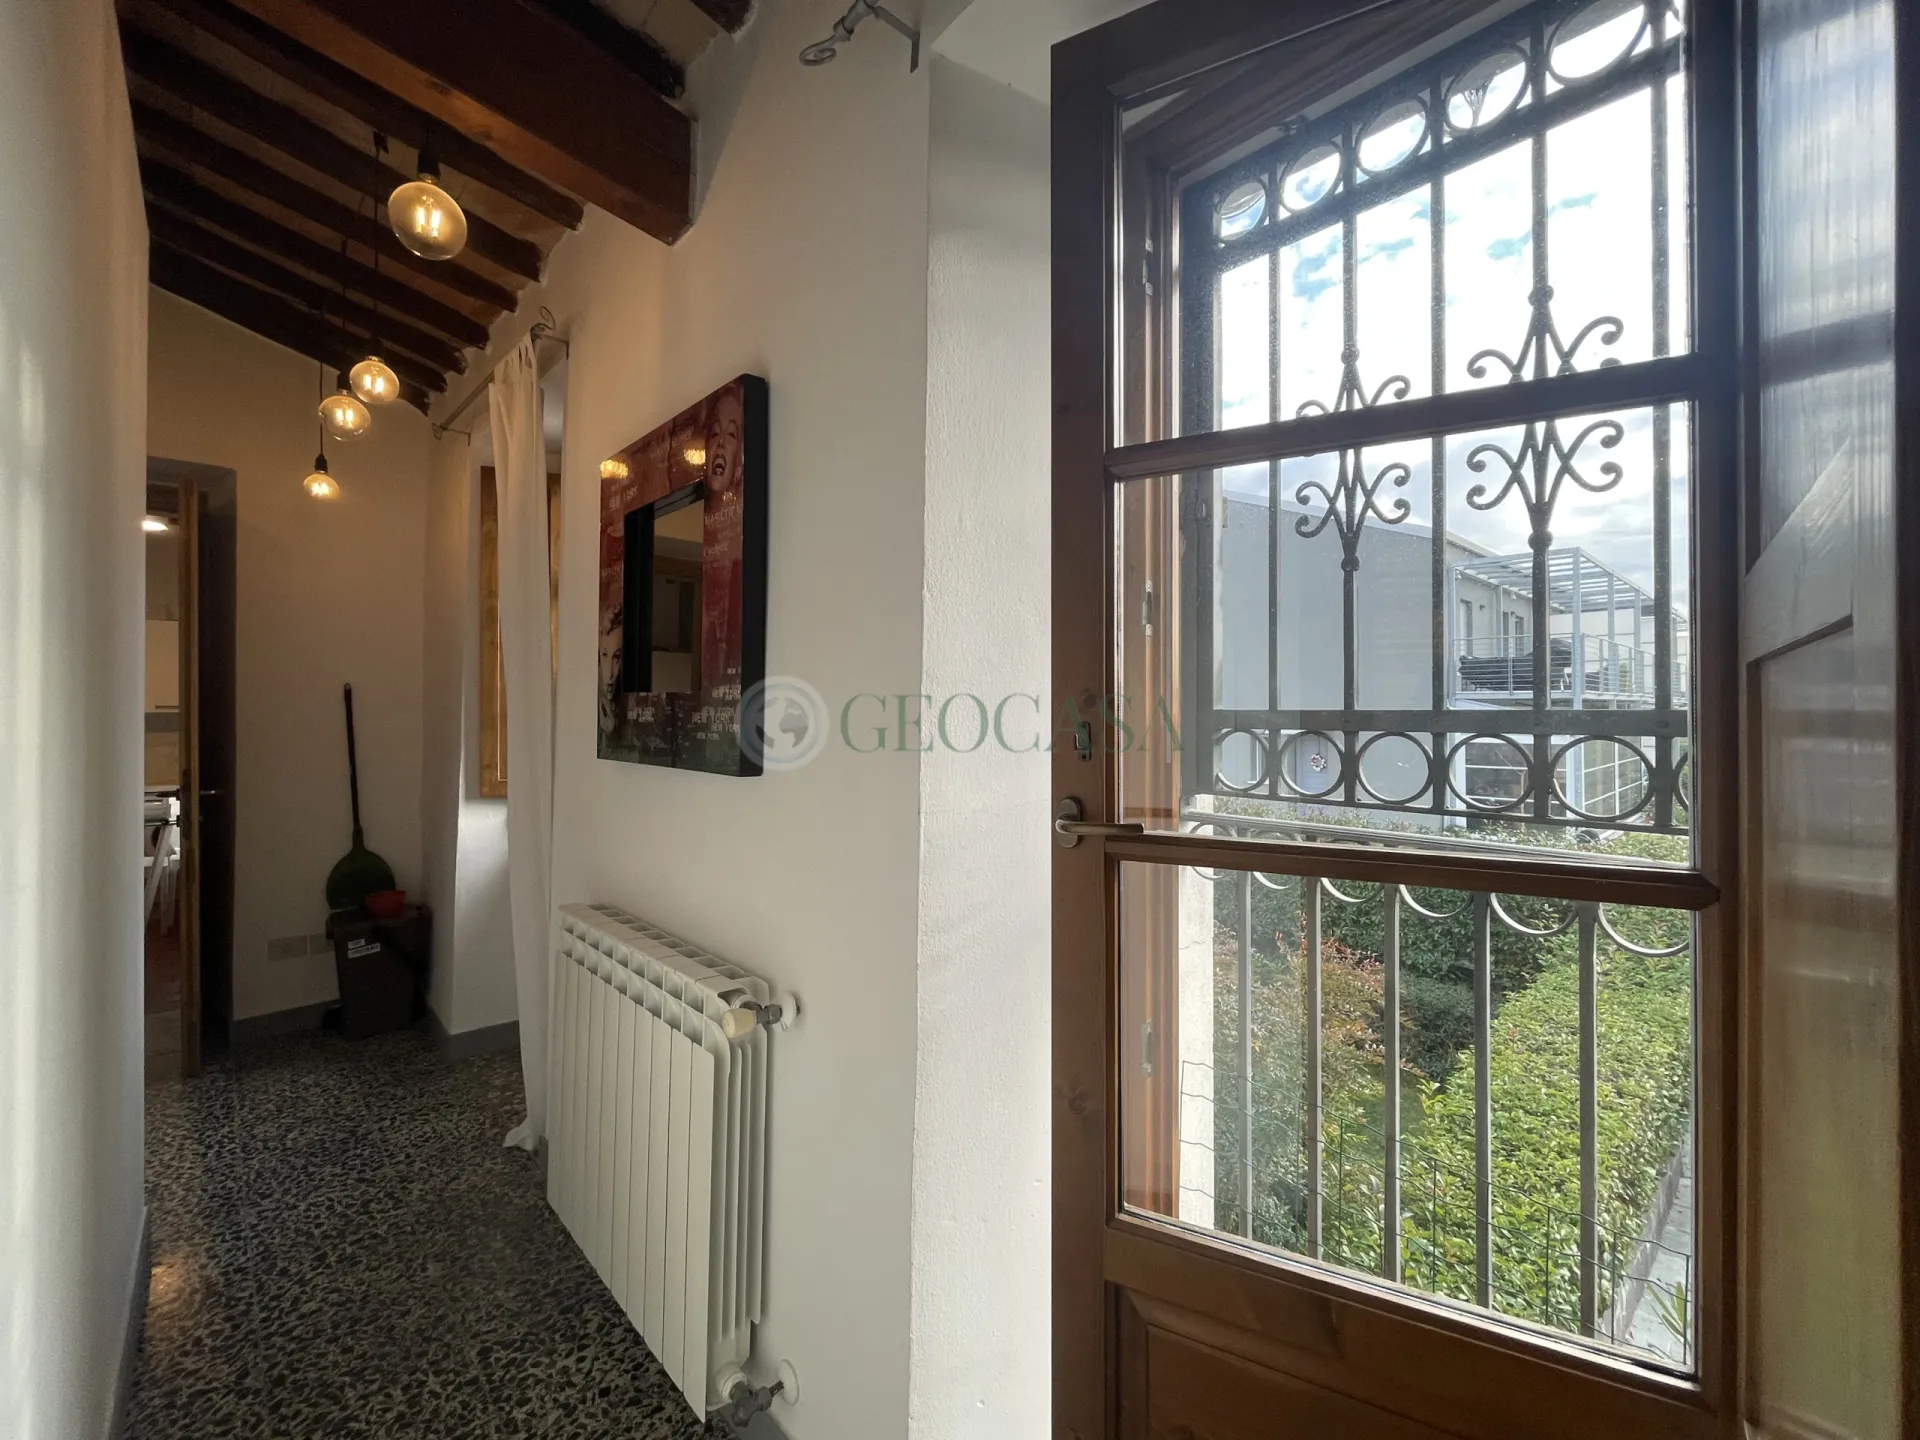 Immagine per Bilocale in vendita a Sarzana via Borghetto 15